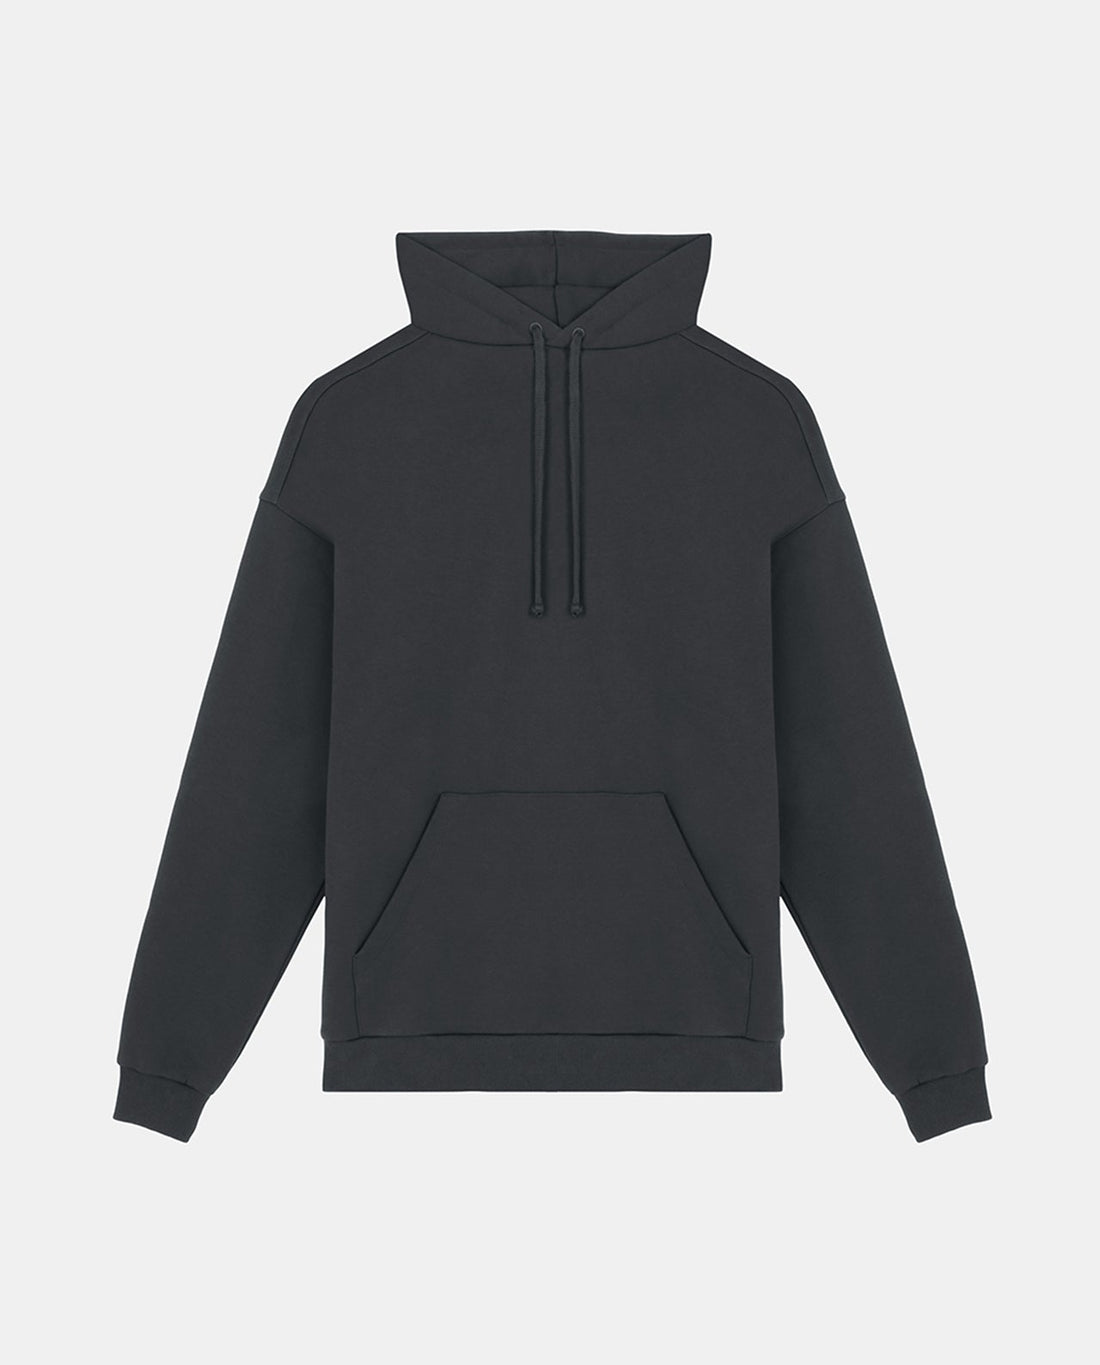 marché commun noyoco sweatshirt hoodie capuche homme coton biologique eco-responsable anthracite